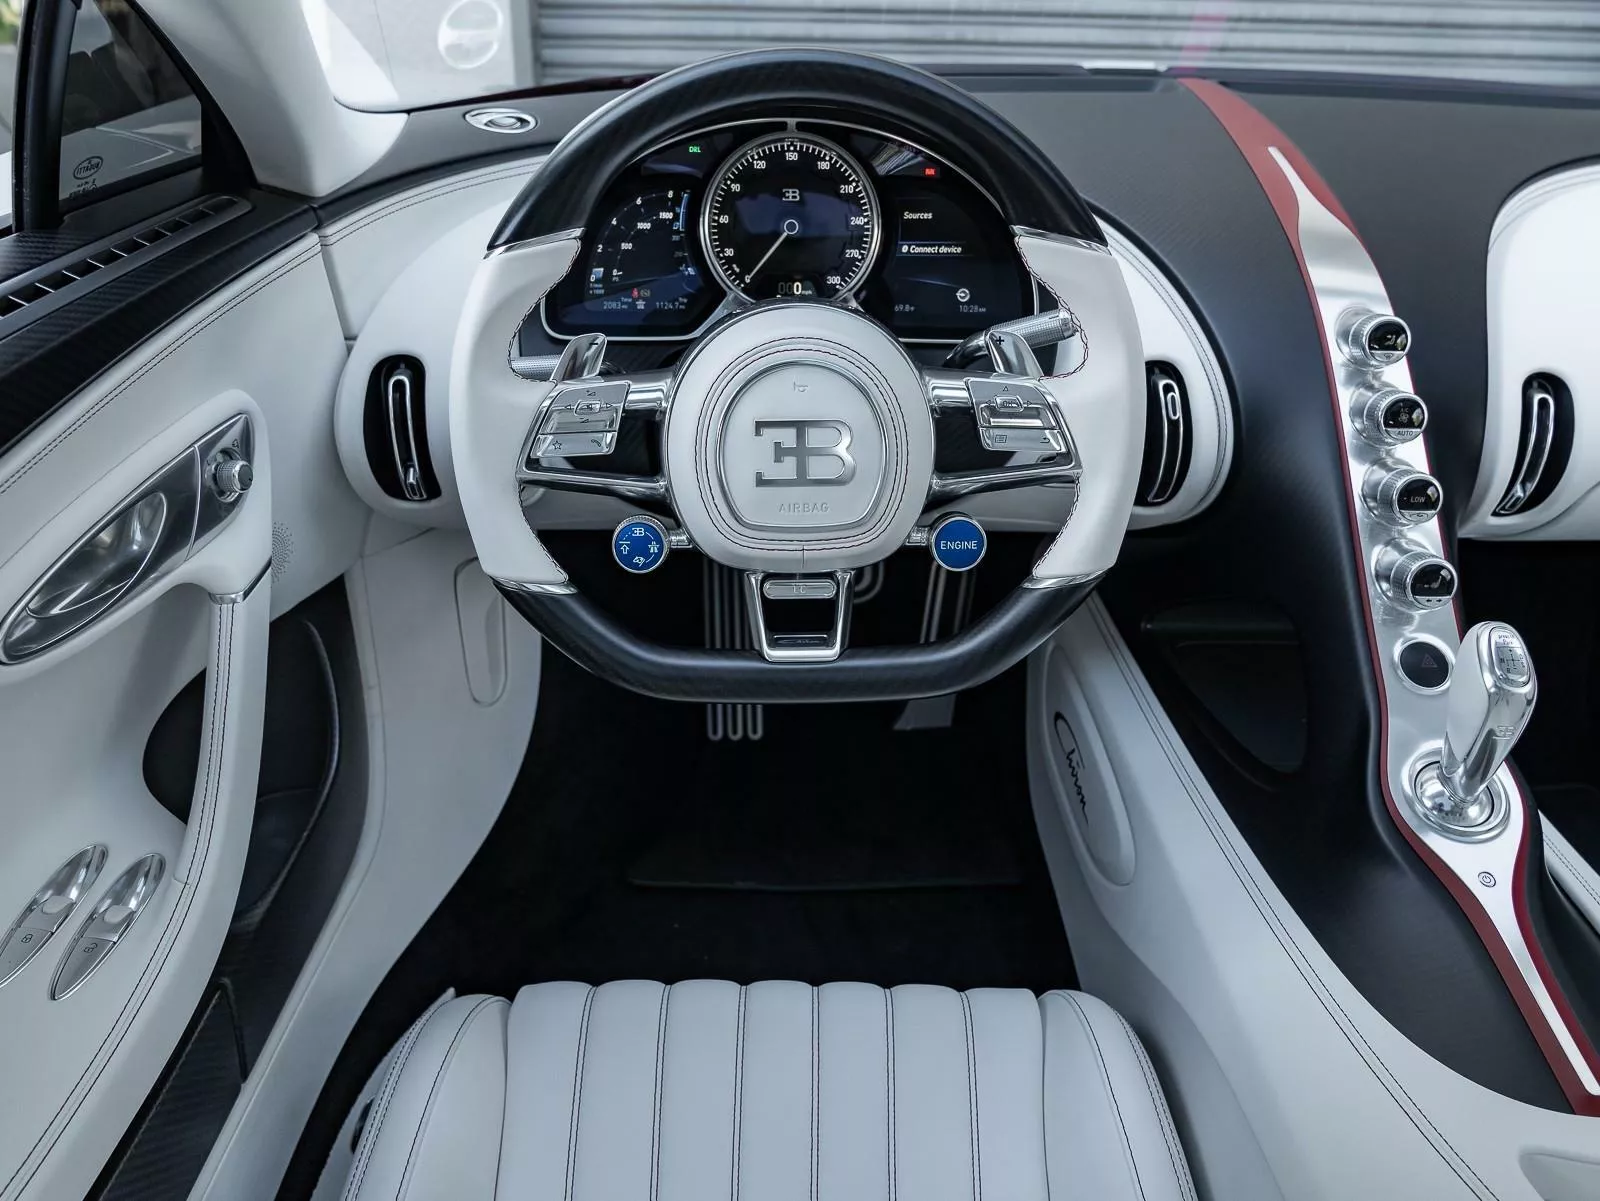 Гиперкар Bugatti выставили на продажу в комплекте с купе Rolls-Royce3